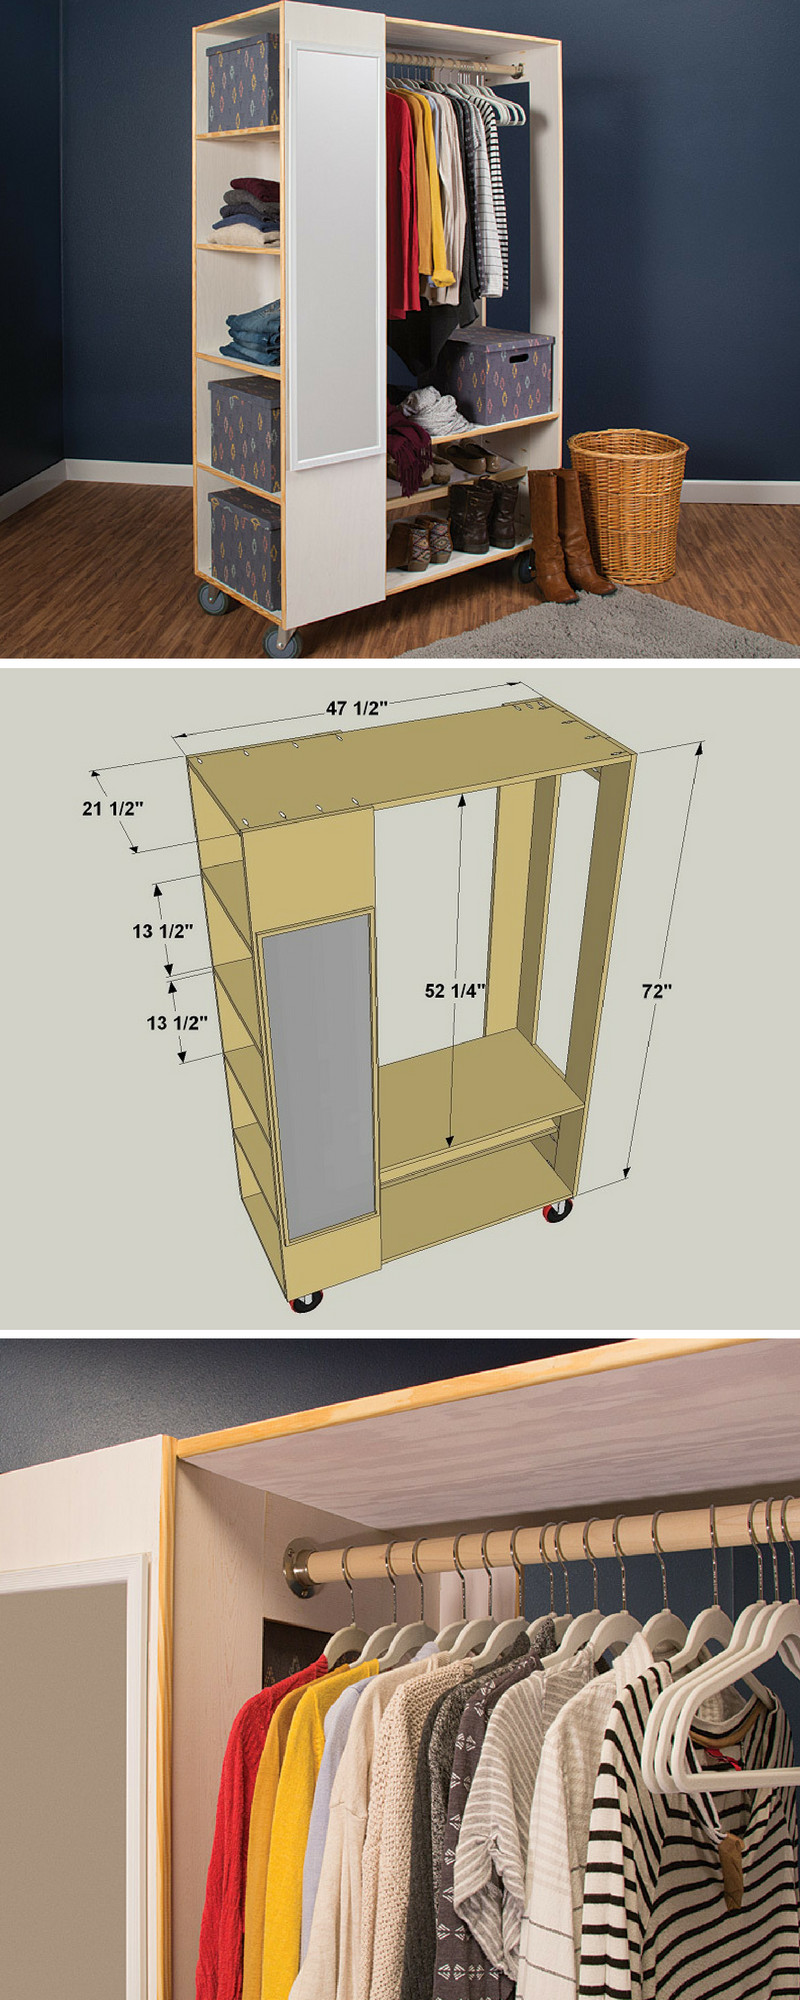 DIY Closet System Plans
 How to Build a DIY Freestanding Closet System